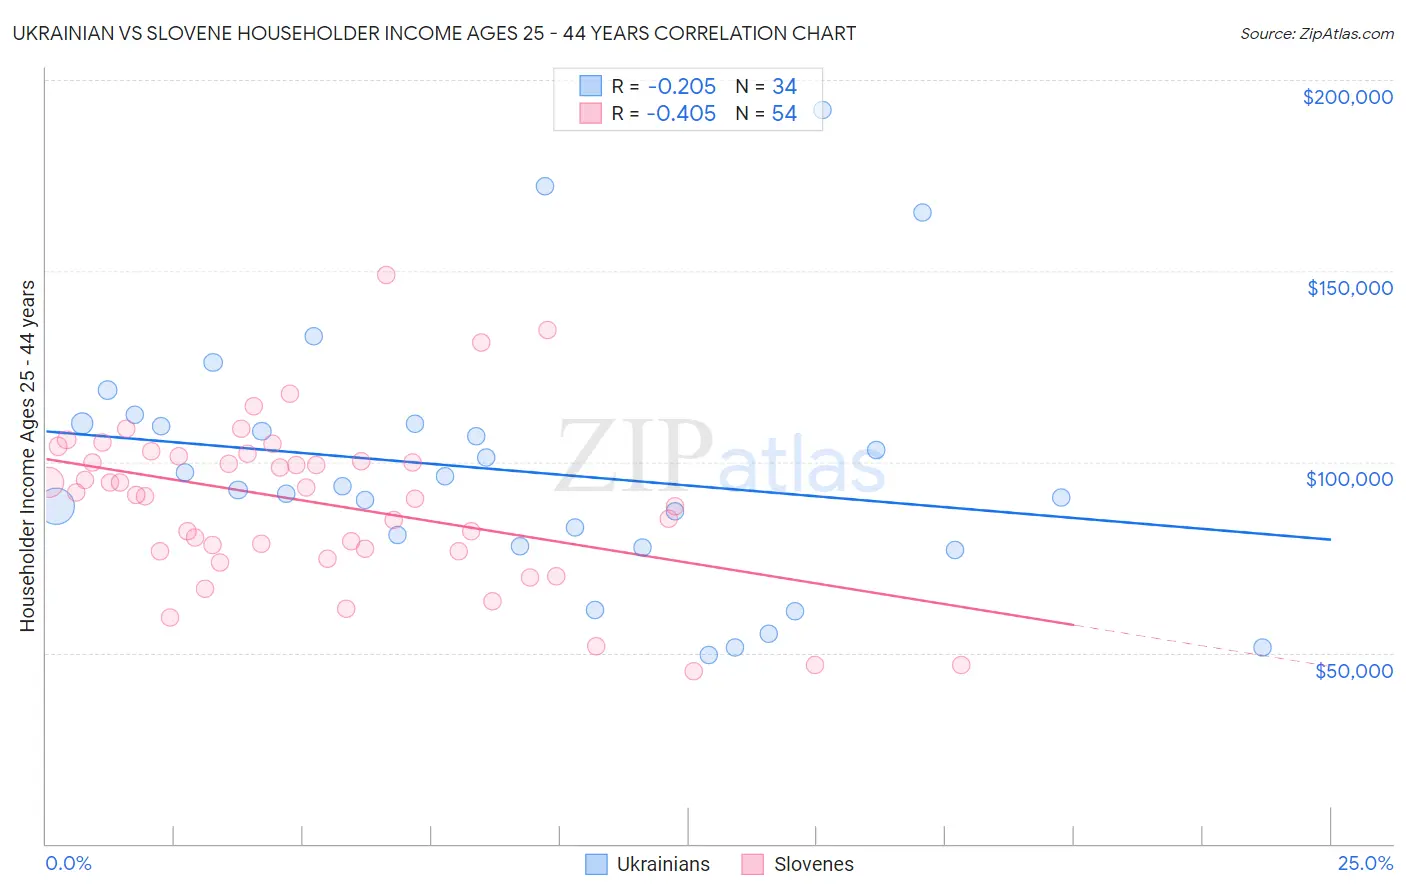 Ukrainian vs Slovene Householder Income Ages 25 - 44 years